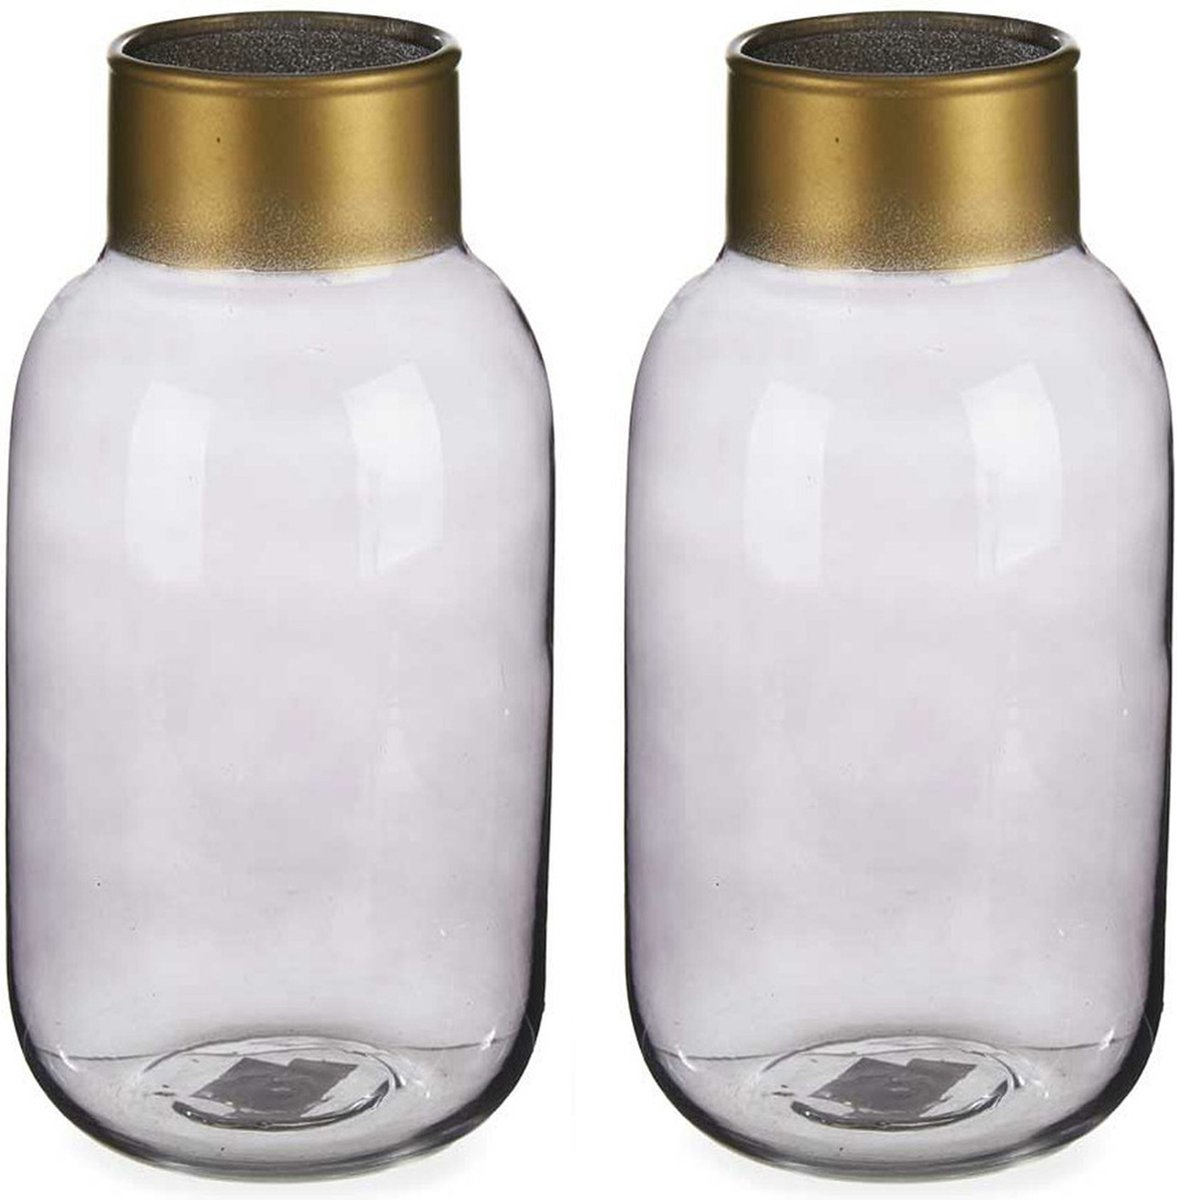 Giftdecor Bloemenvazen 2x Stuks - Luxe Decoratie Glas - Grijs/goud - 12 X 24 Cm - Vazen